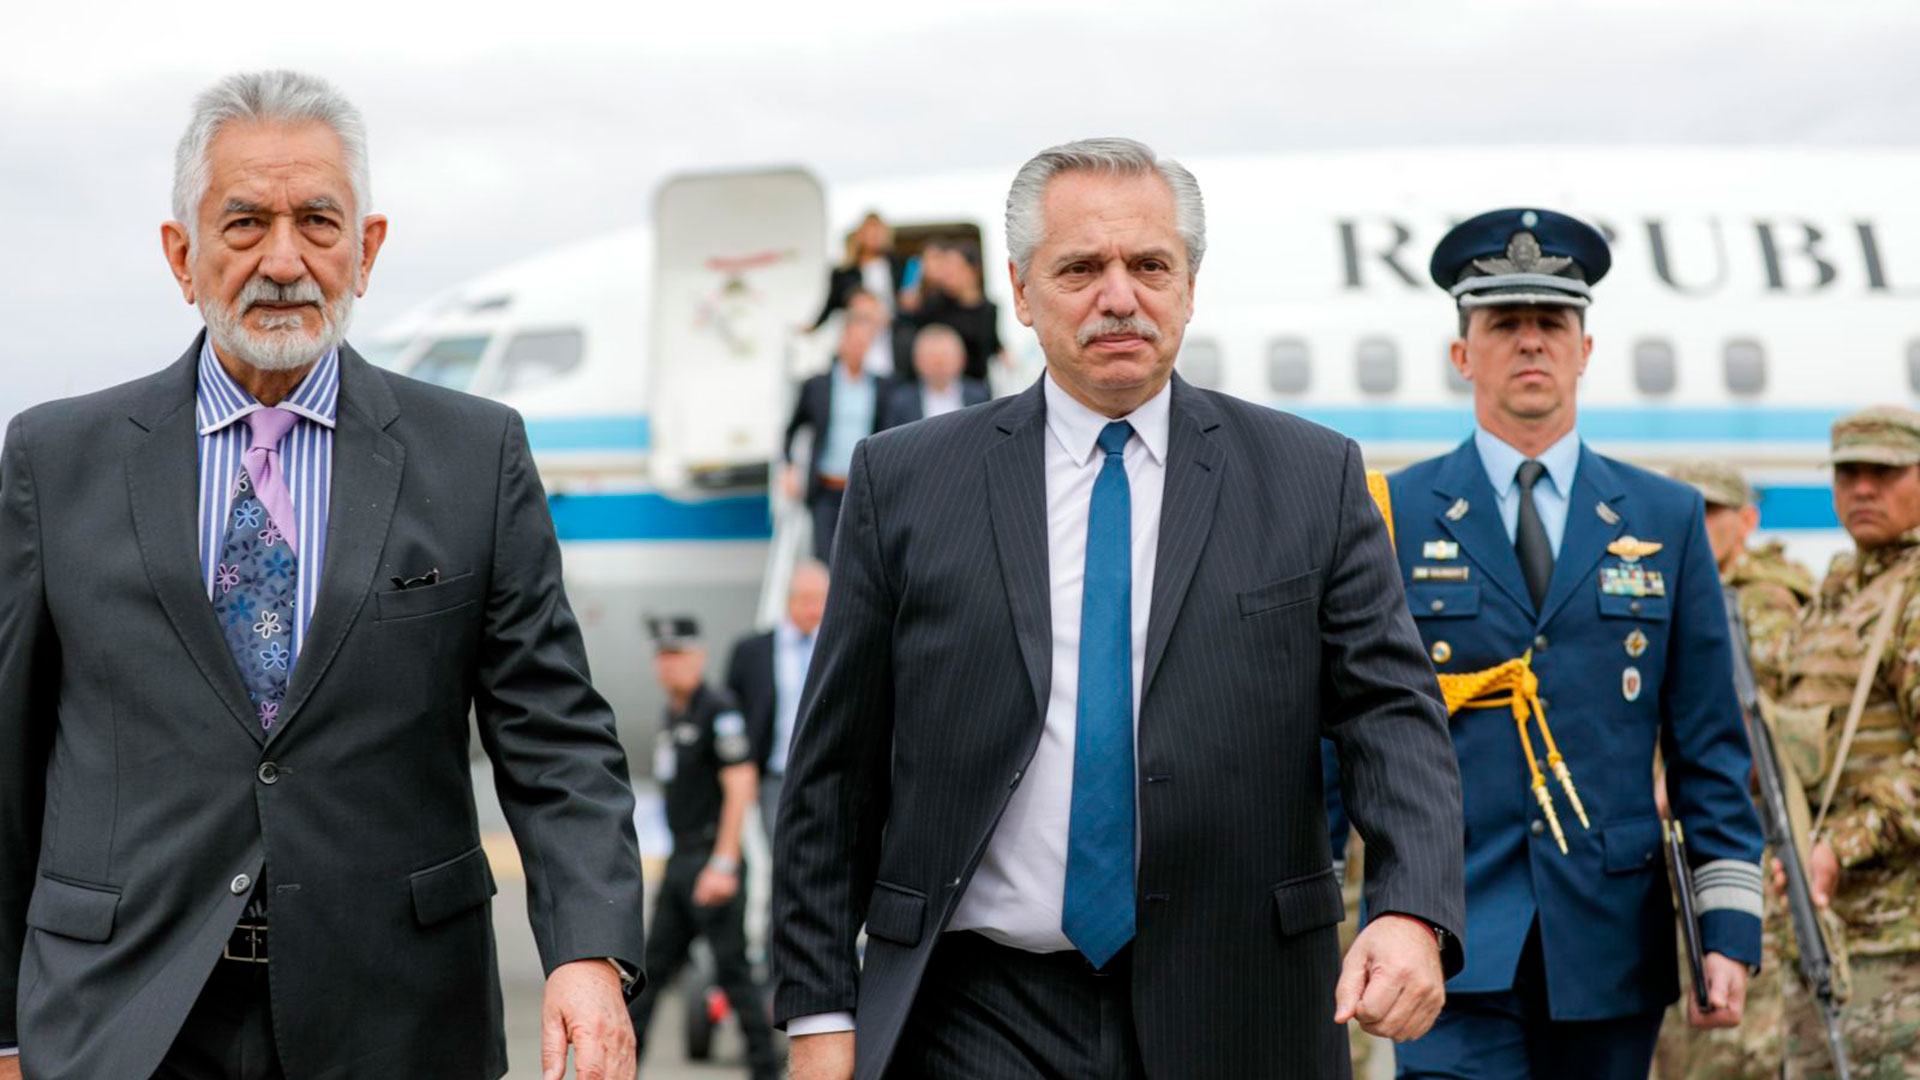 El presidente Alberto Fernández mantiene una relación fluctuante con el gobernador Alberto Rodríguez Saá, quien no apoyó el pedido de juicio político a la Corte Suprema